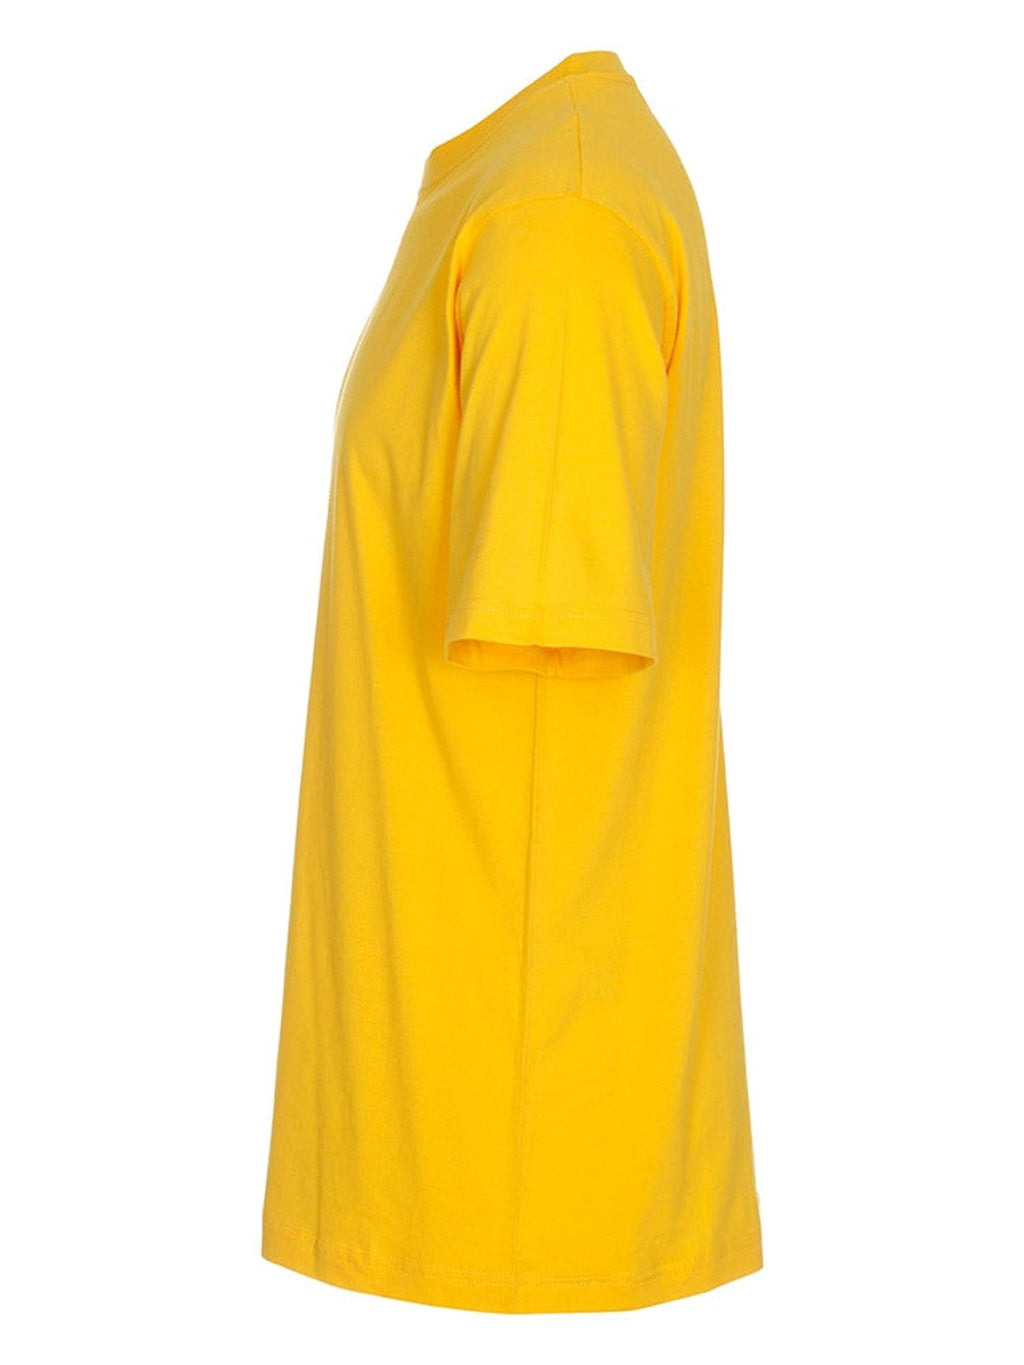 Υπερμεγέθη μπλουζάκι - κίτρινο